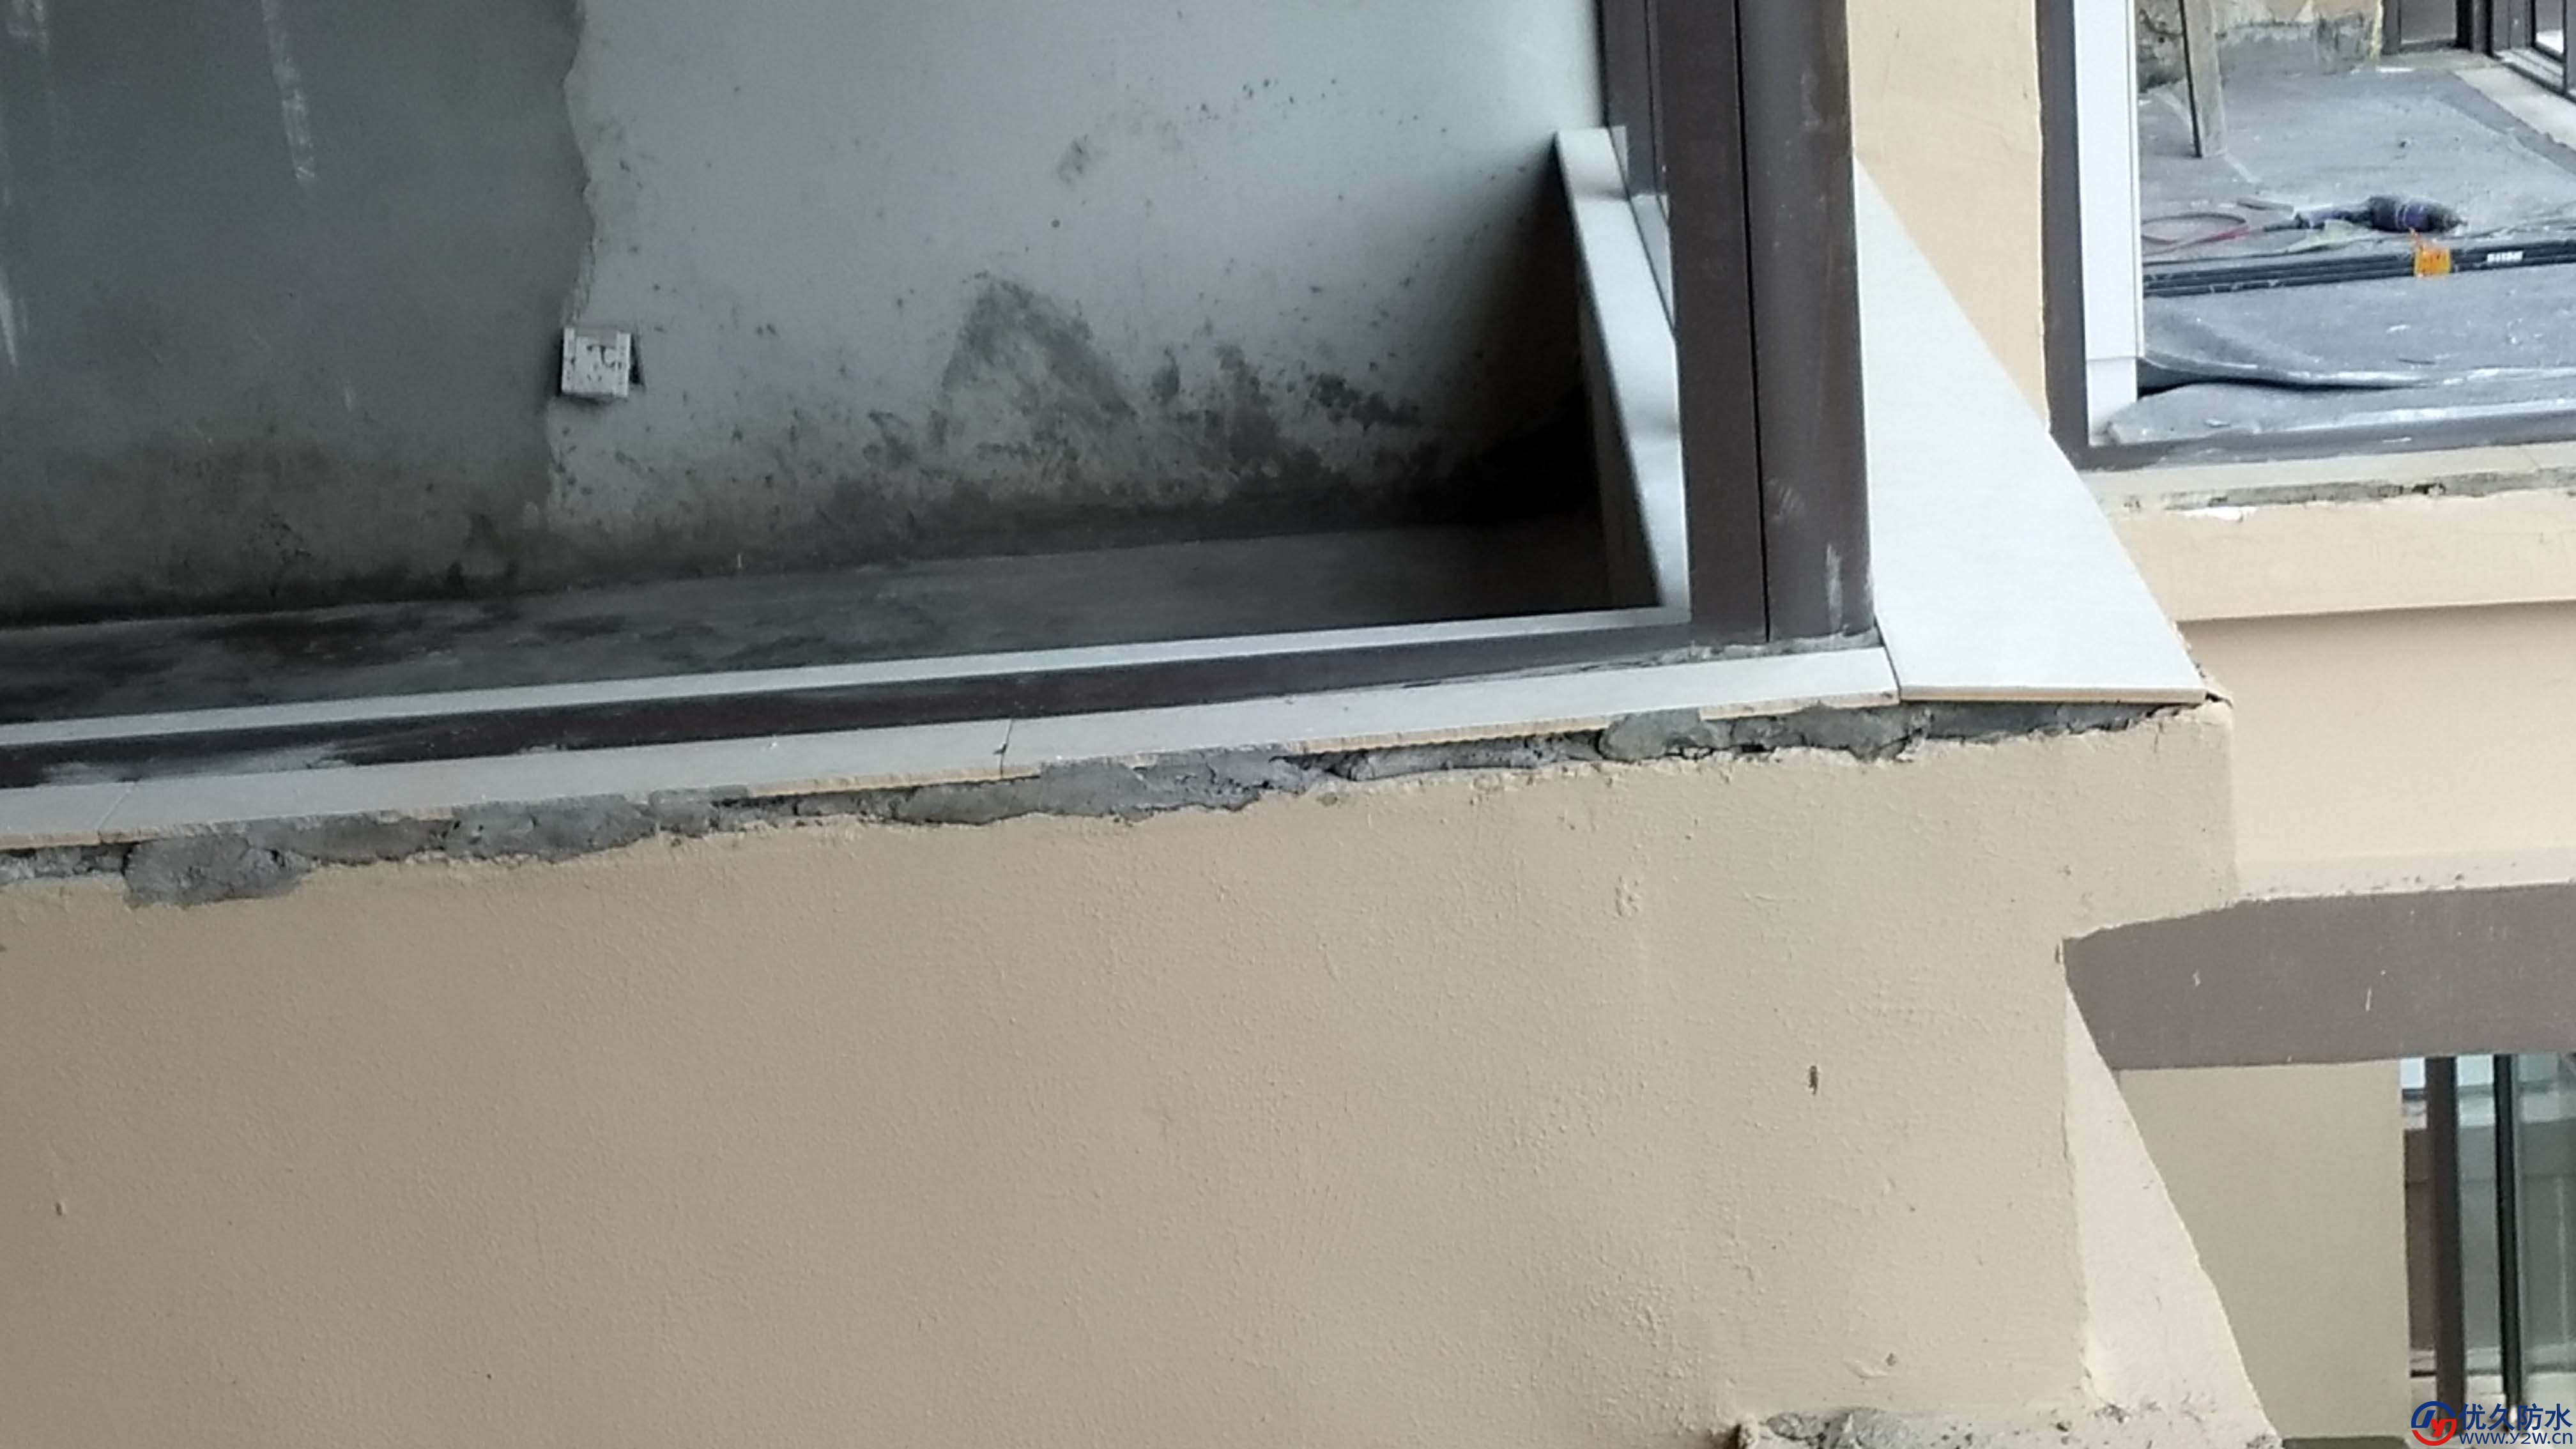 窗台贴砖未拆除窗台存在倒灌水